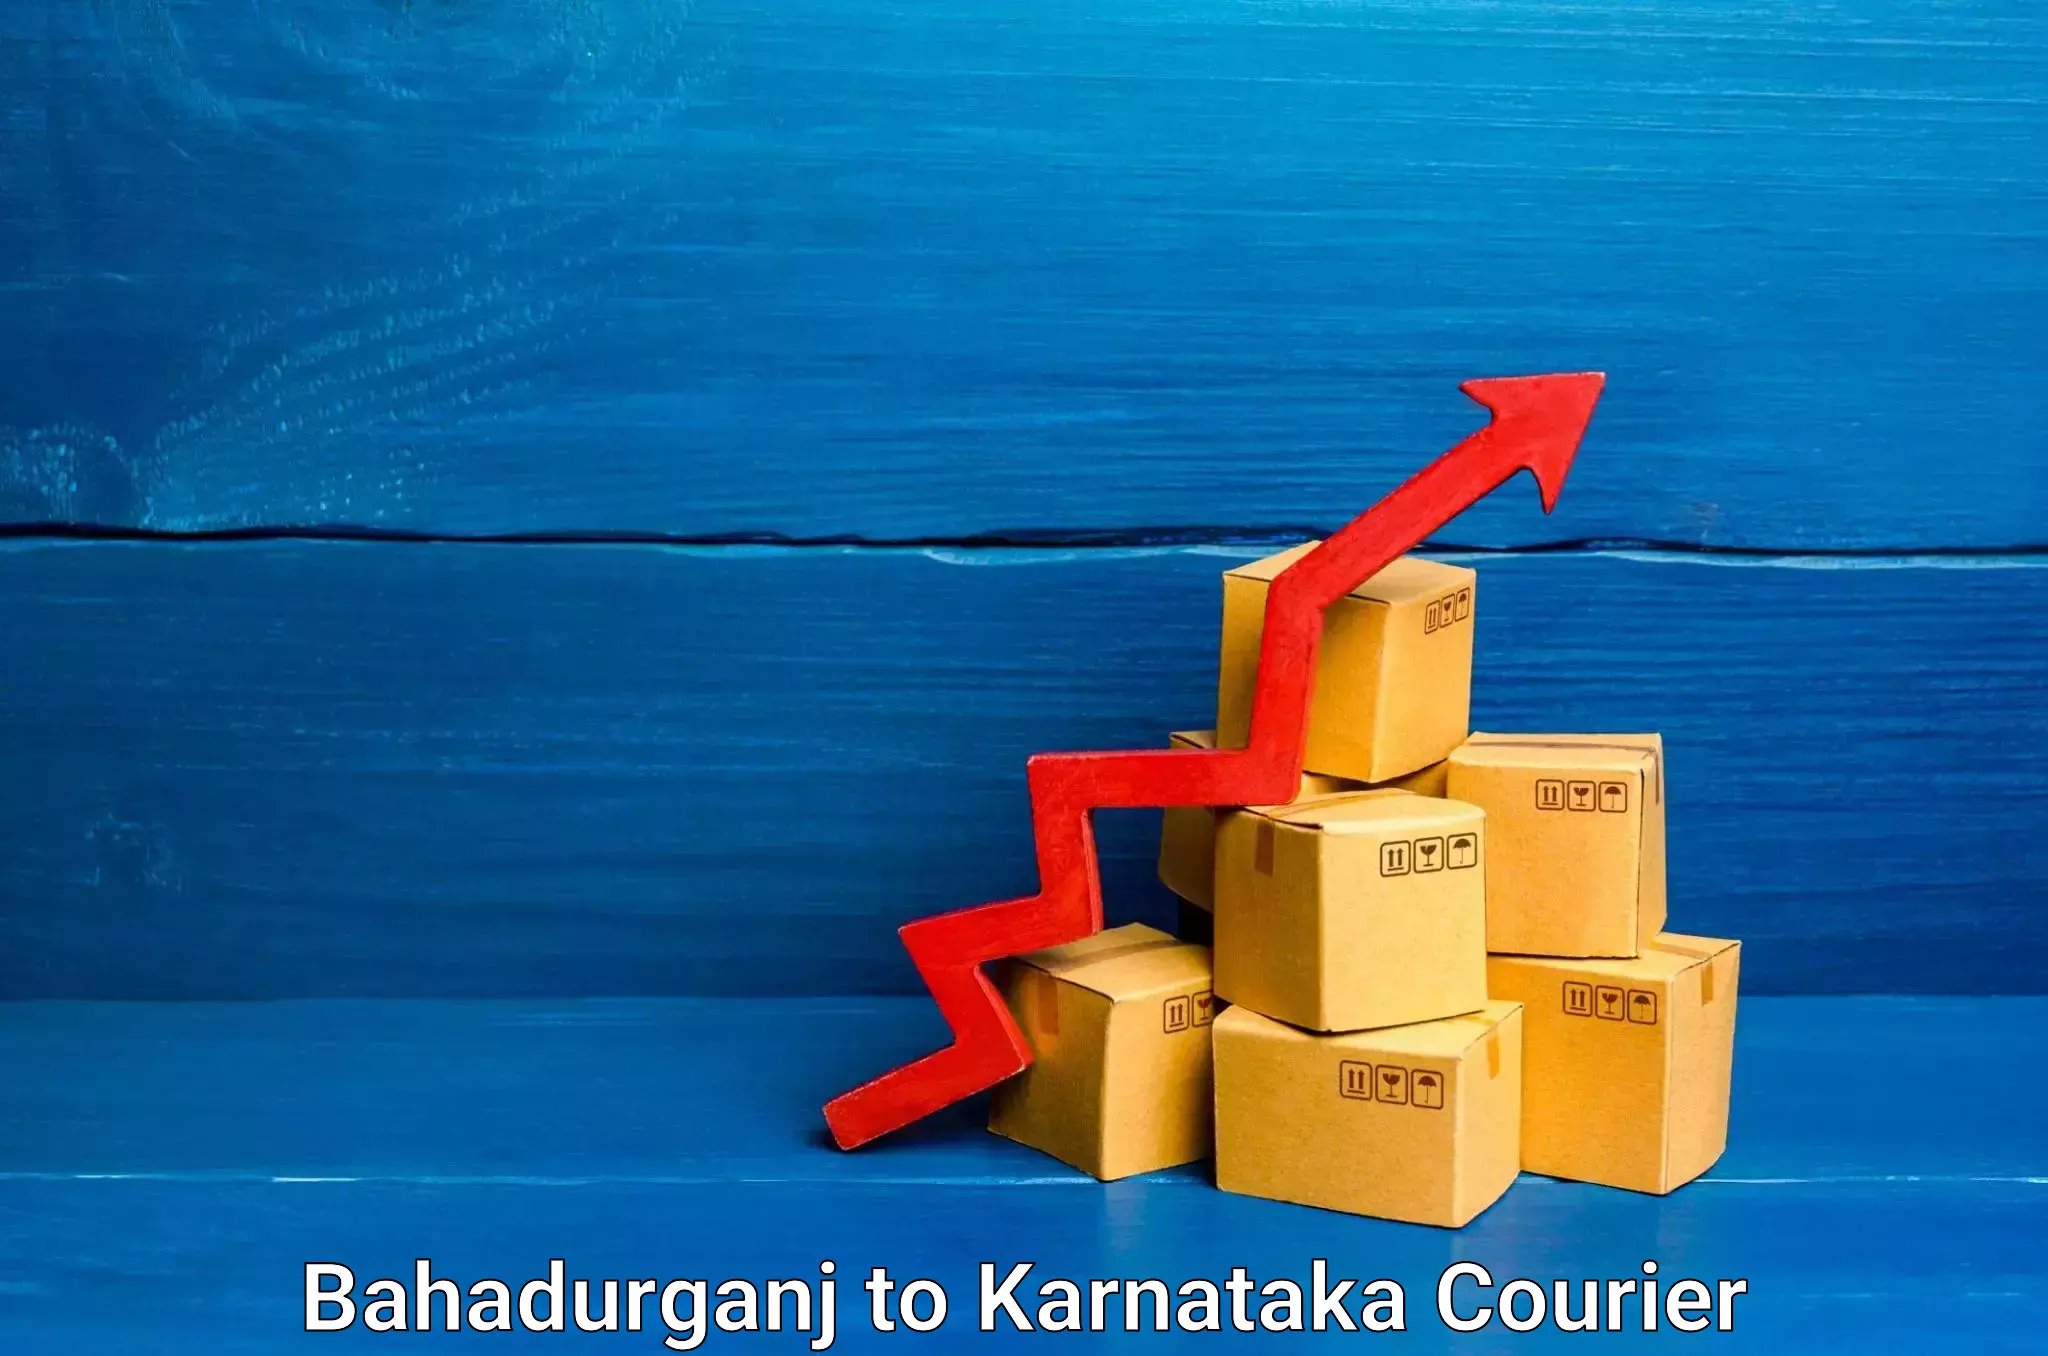 Household transport experts Bahadurganj to Karnataka